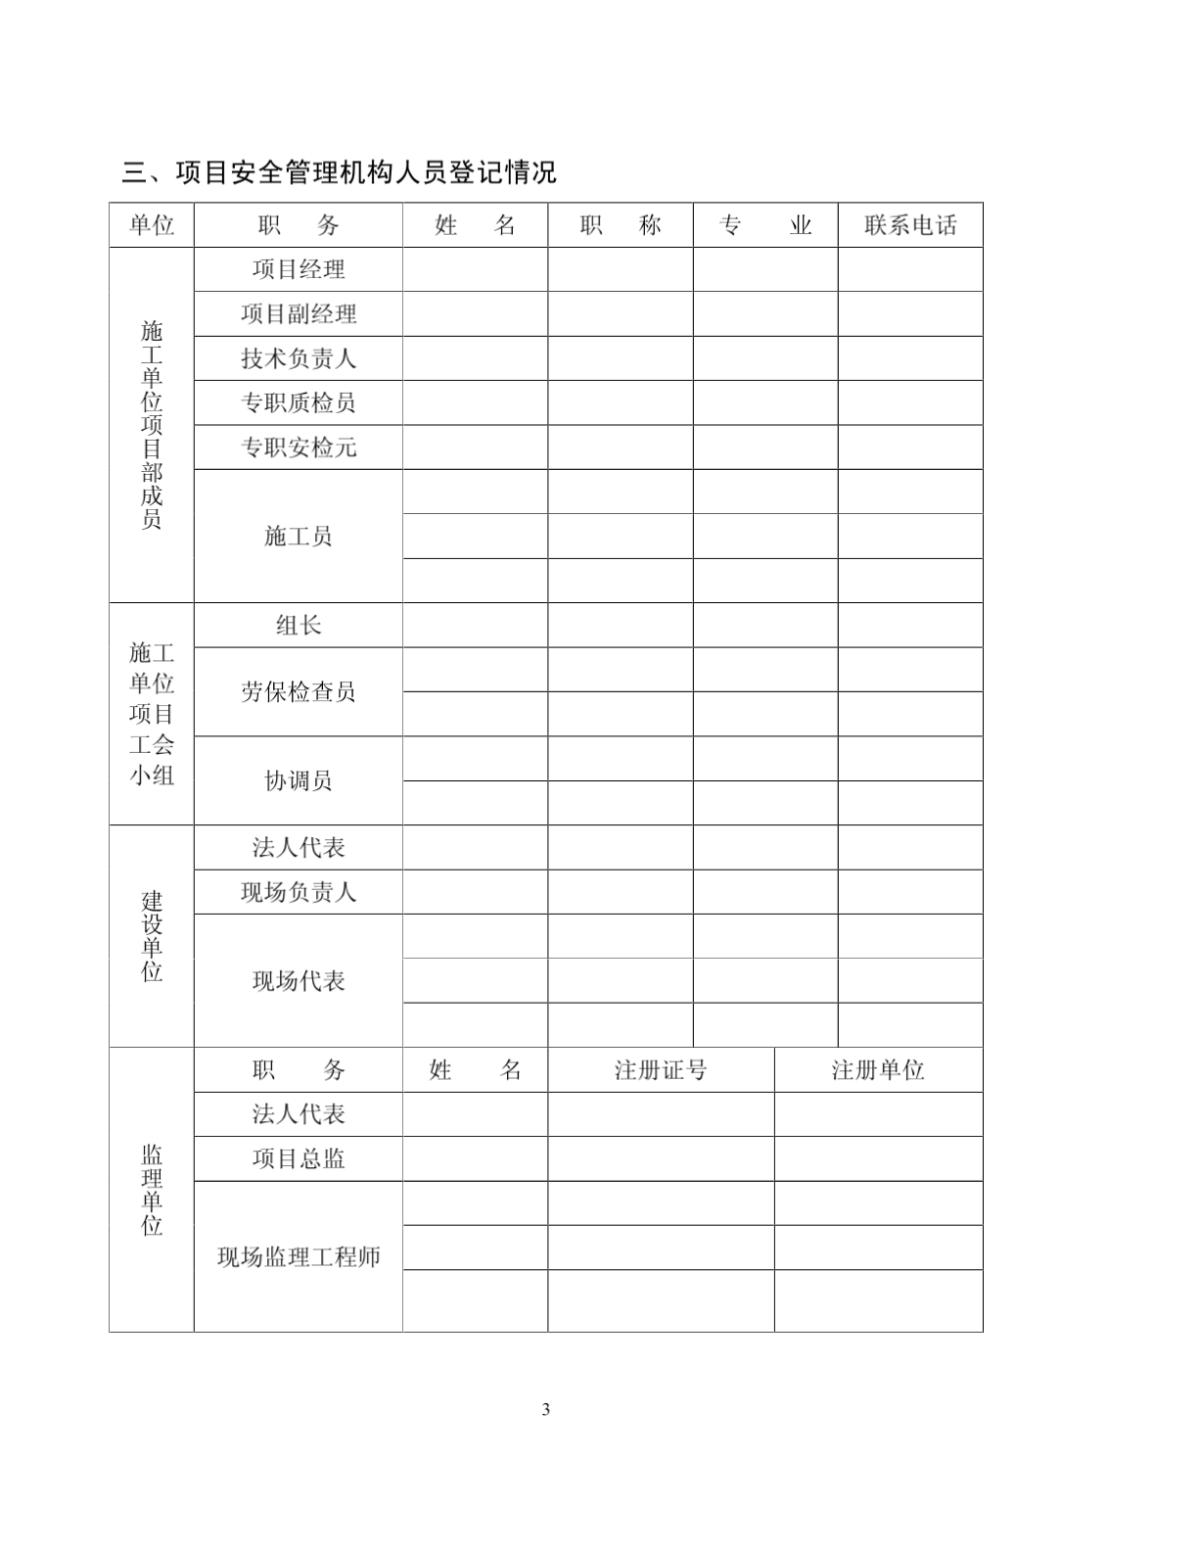 贵州省建设工程施工安全监督登记表-图一